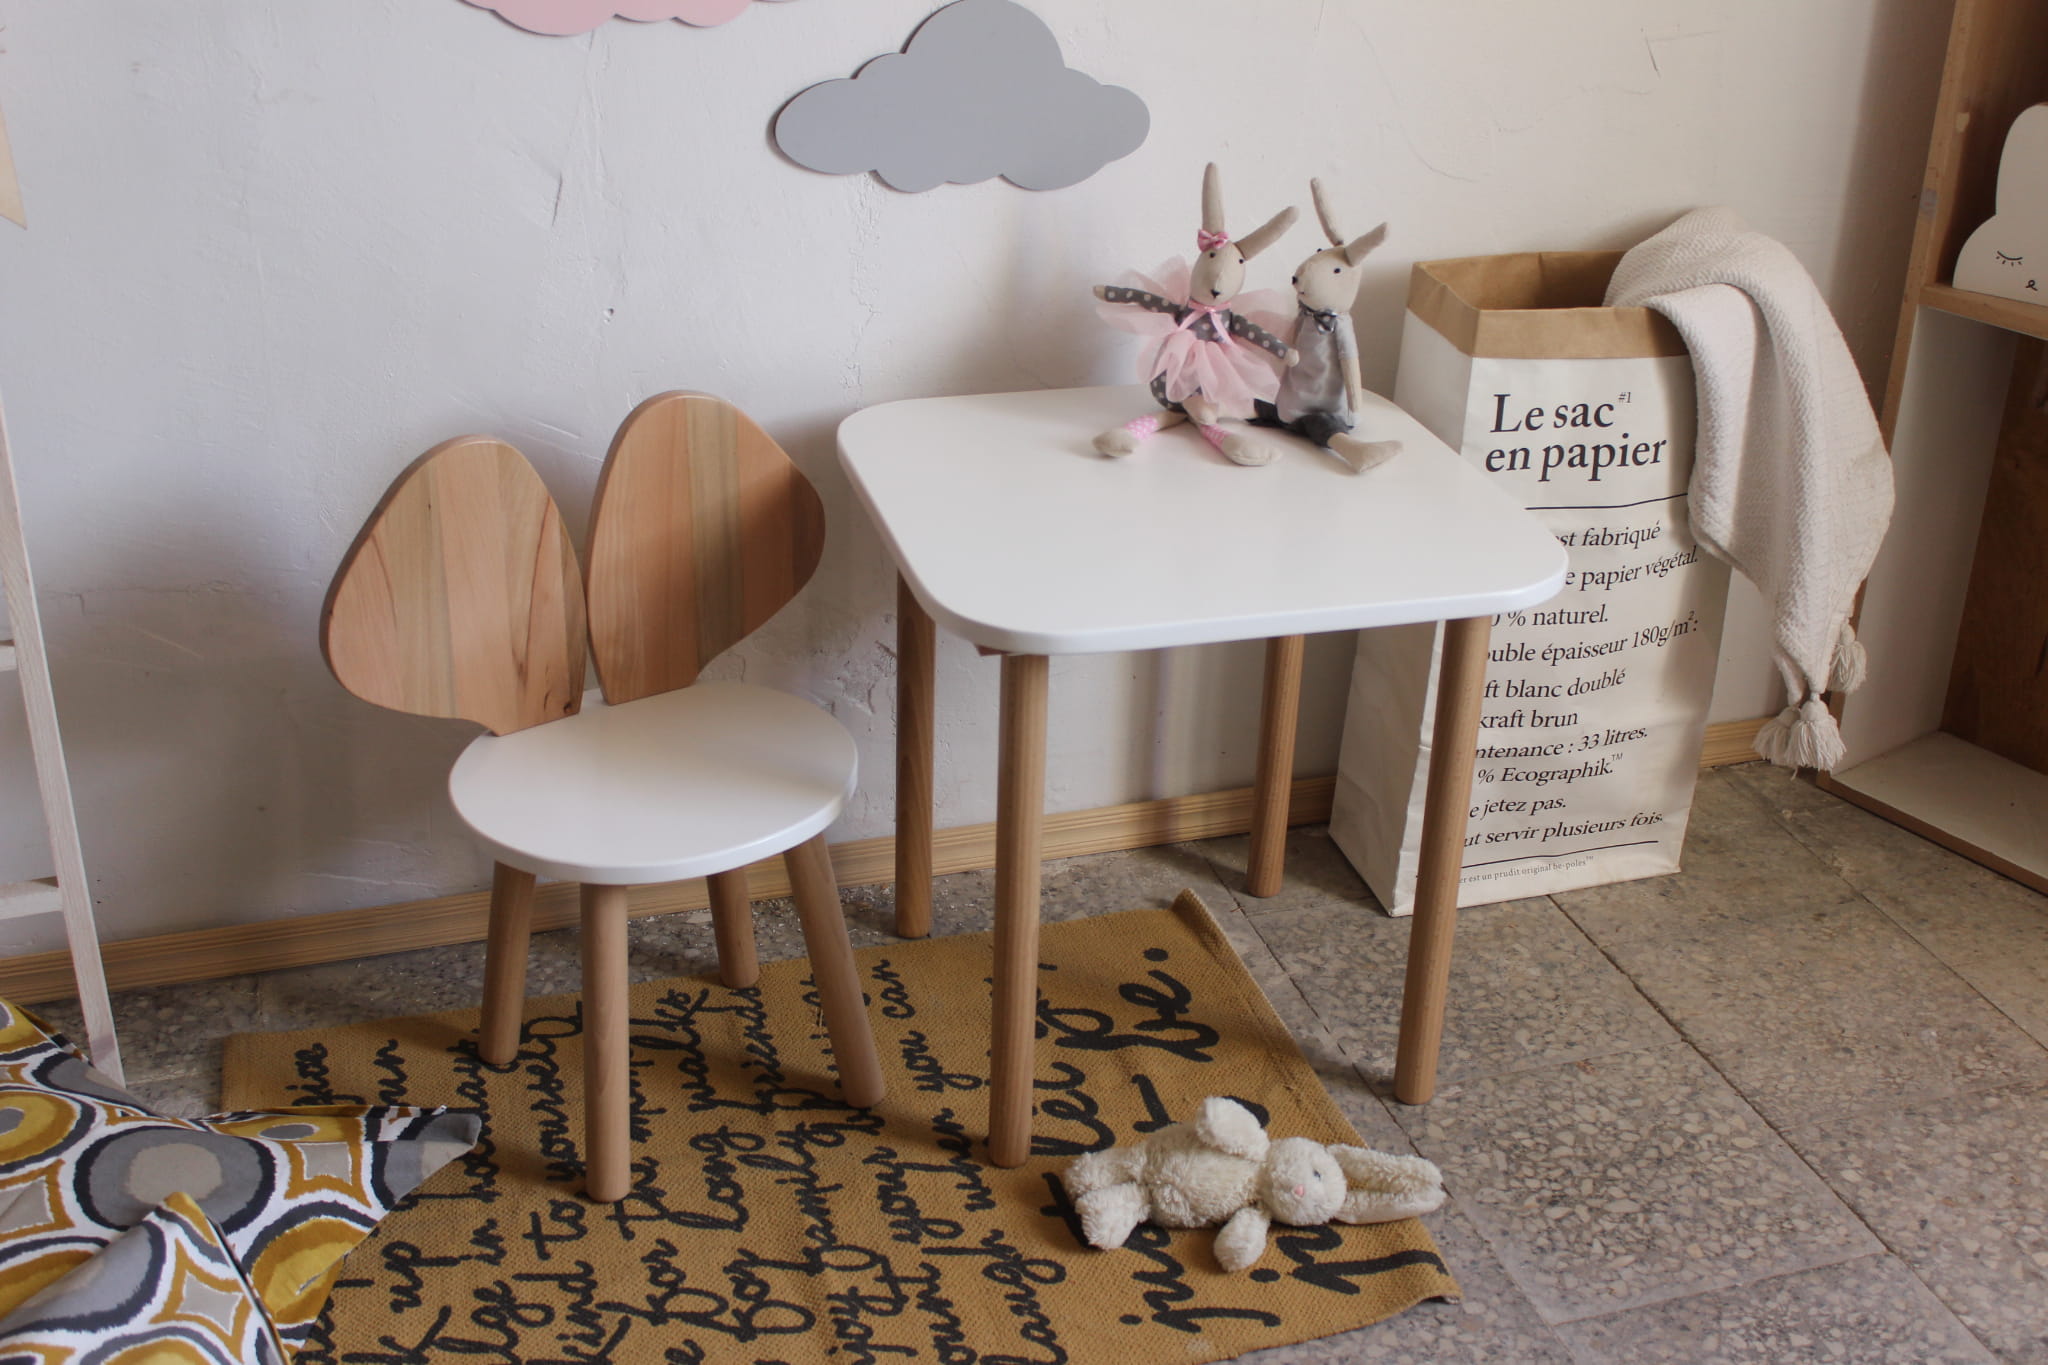 Urocze dziecięce krzesełko mysz na drewnianych nogach z oparciem z drewna bukowego w zestawie ze stolikiem w białym kolorze .